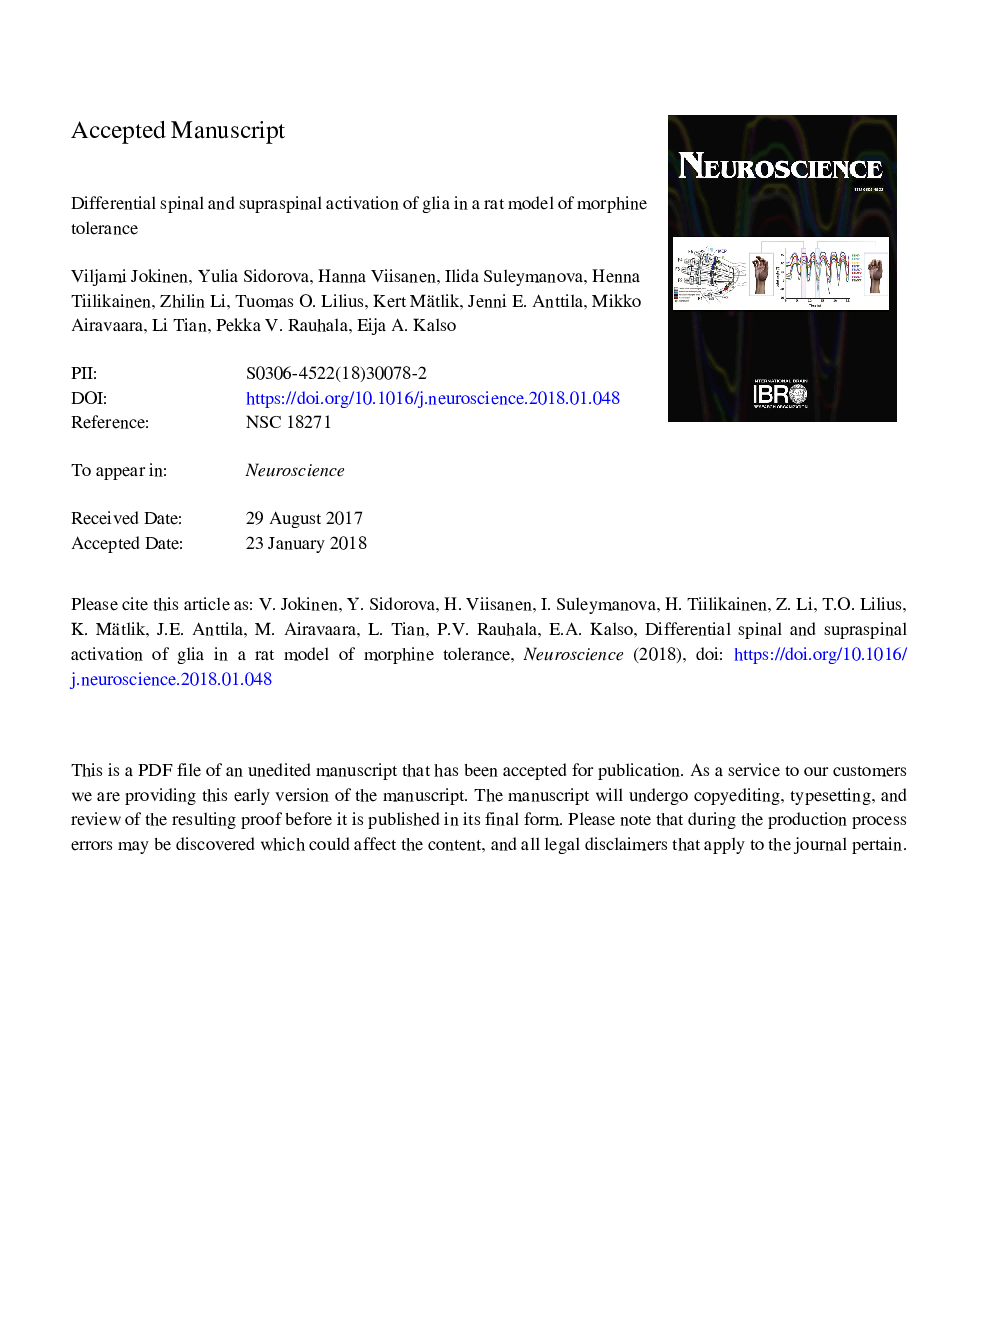 فعال سازی دیفرانسیل ستون فقرات و سوپراسپینال گلیا در یک مدل موی تحمل مورفین 